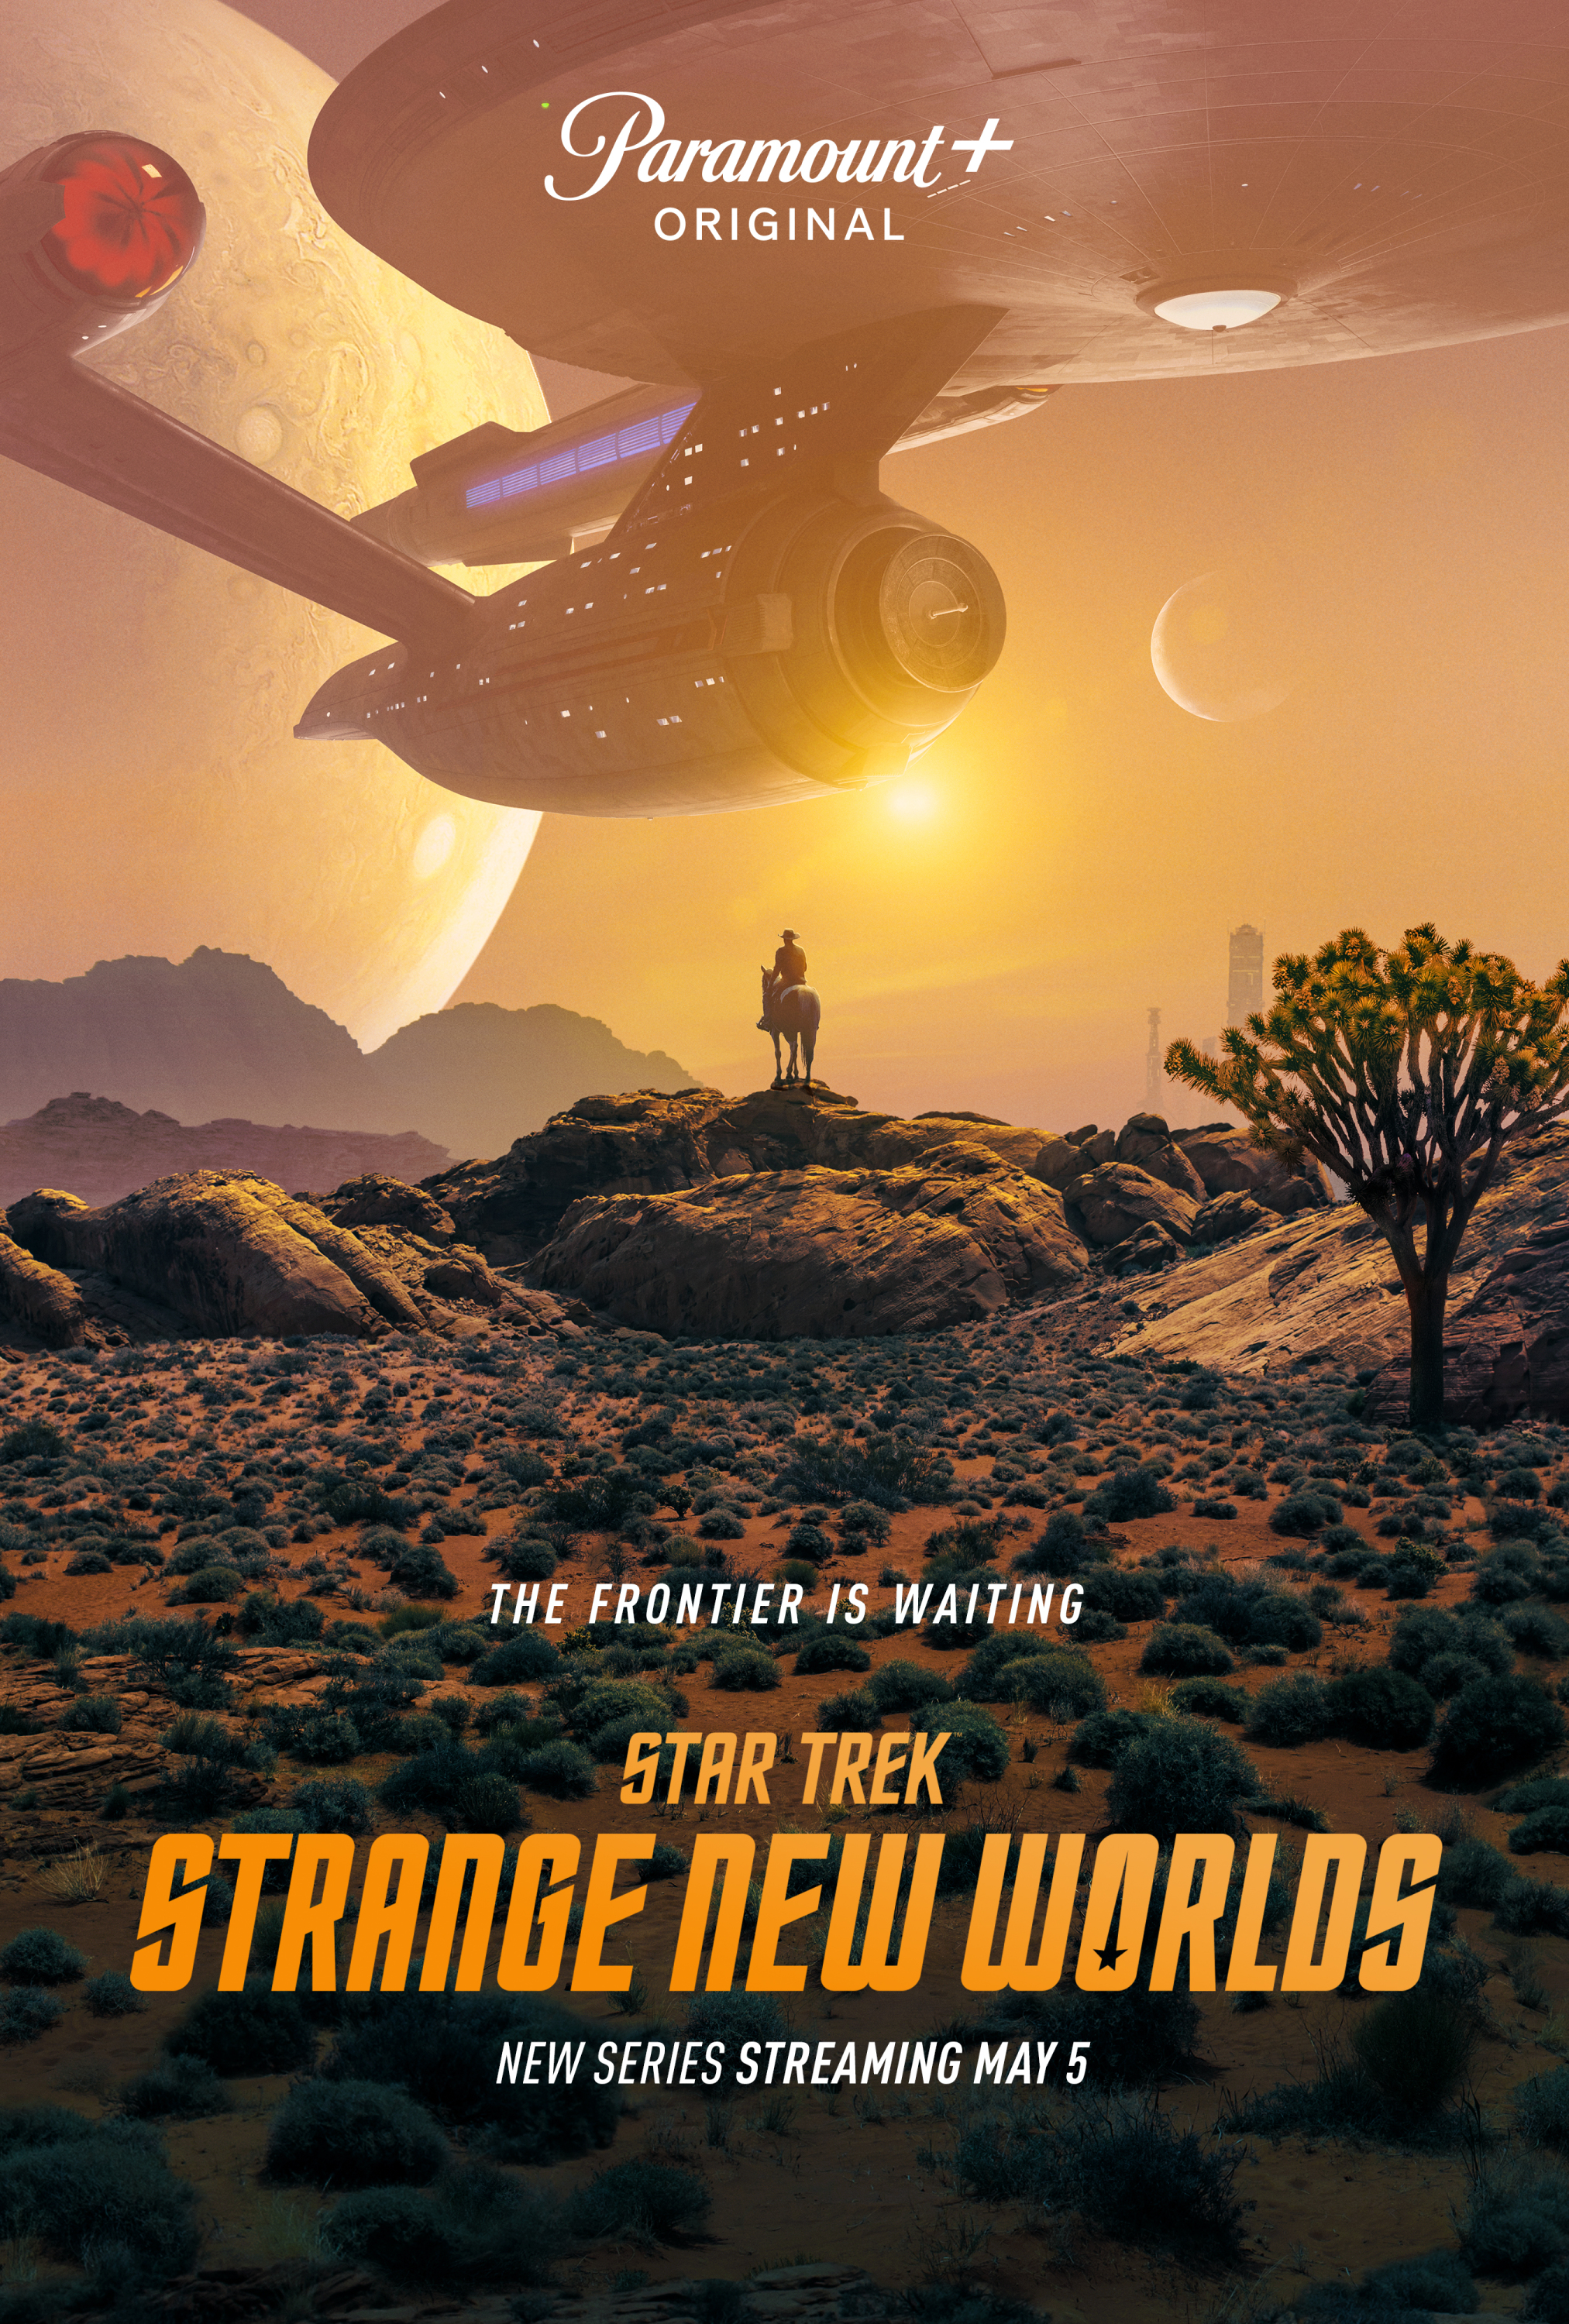  Star Trek: Strange New Worlds S01E07 (EN)[WebRip][2160p] = CSFD 78%